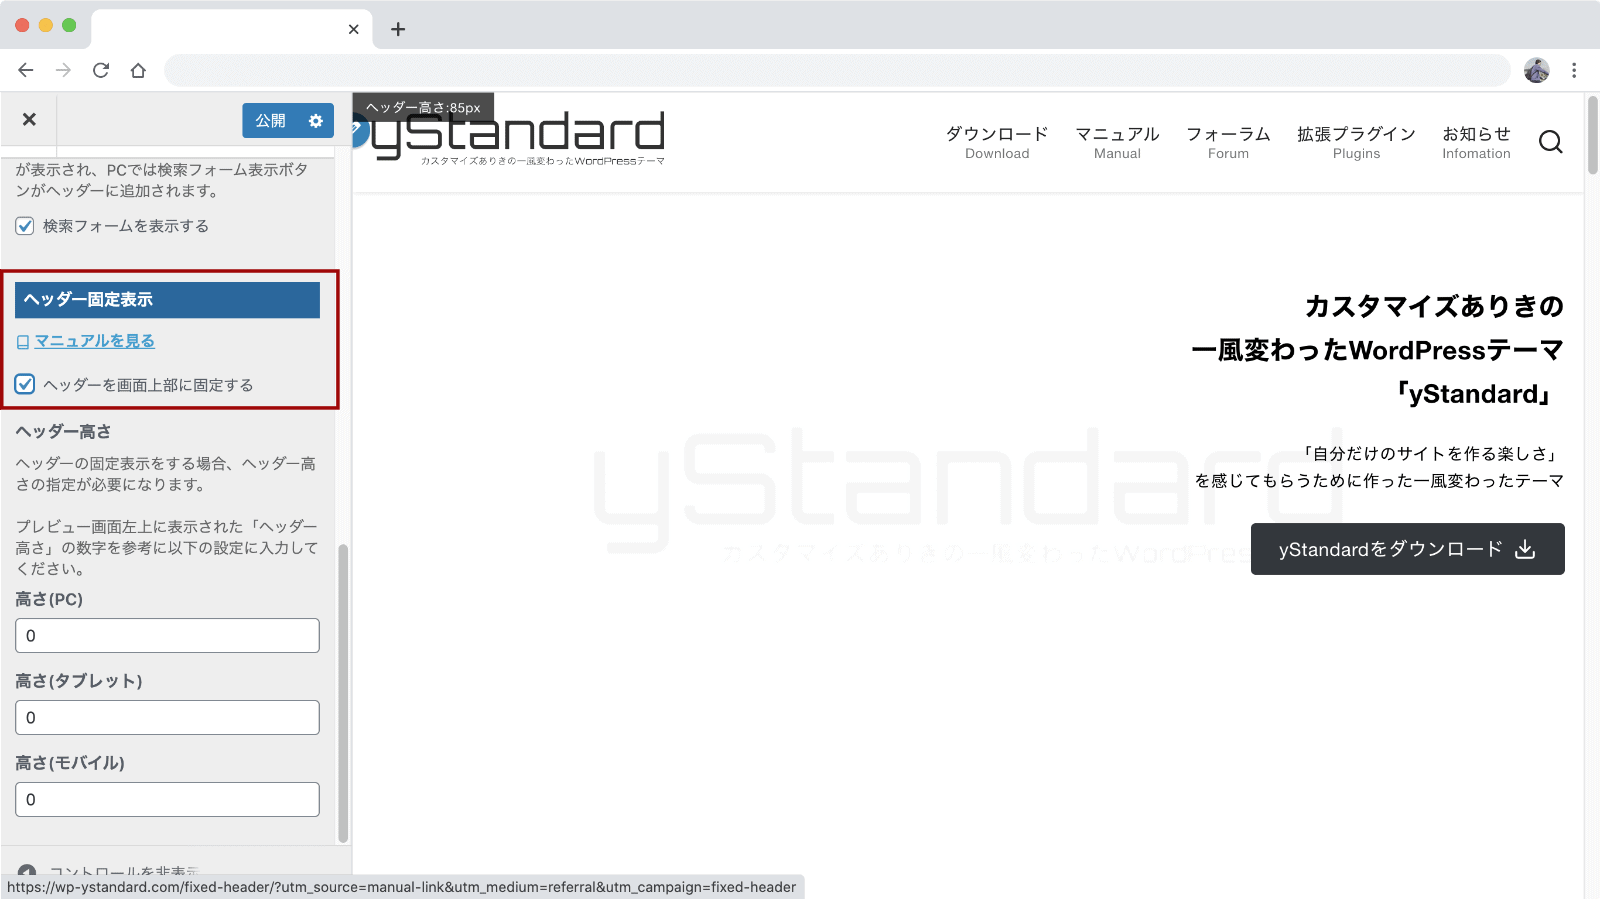 ヘッダーを画面上部に固定表示する方法 Ystandard